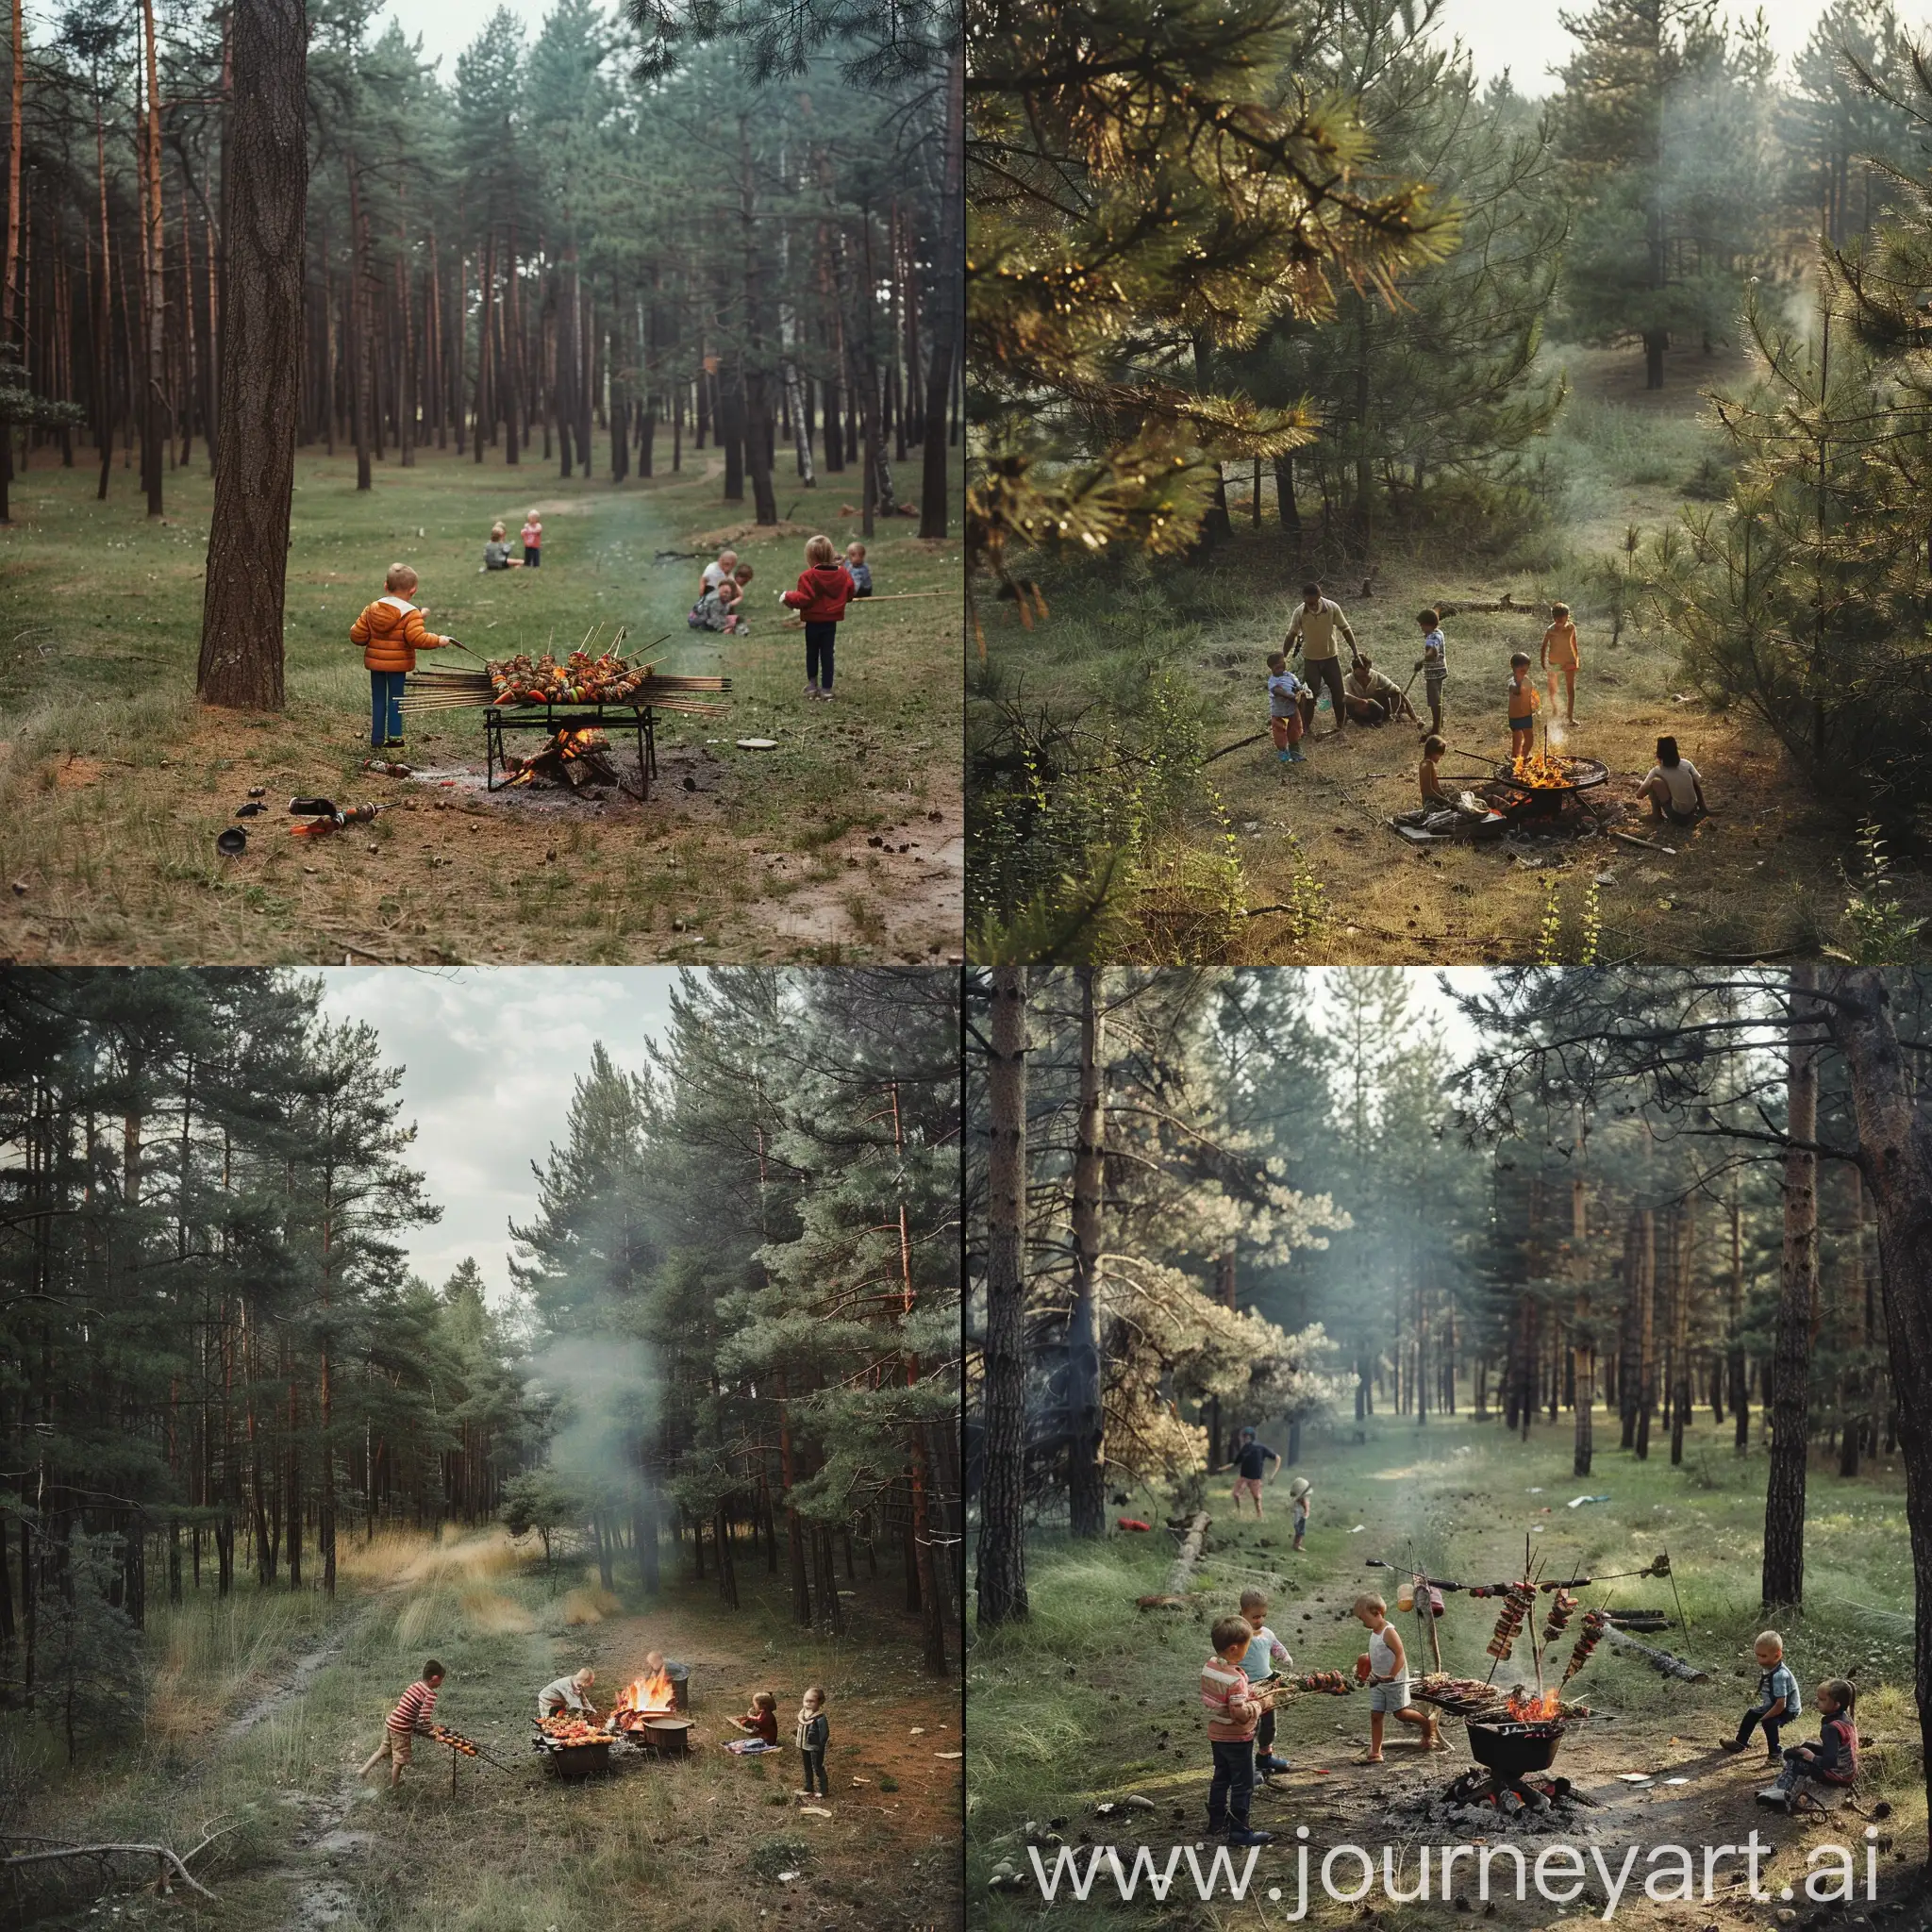 Фотография из далека. Сосновый лес, пустой пяточек, где семья жарит шашлык над костром, а дети играют рядом с ними 